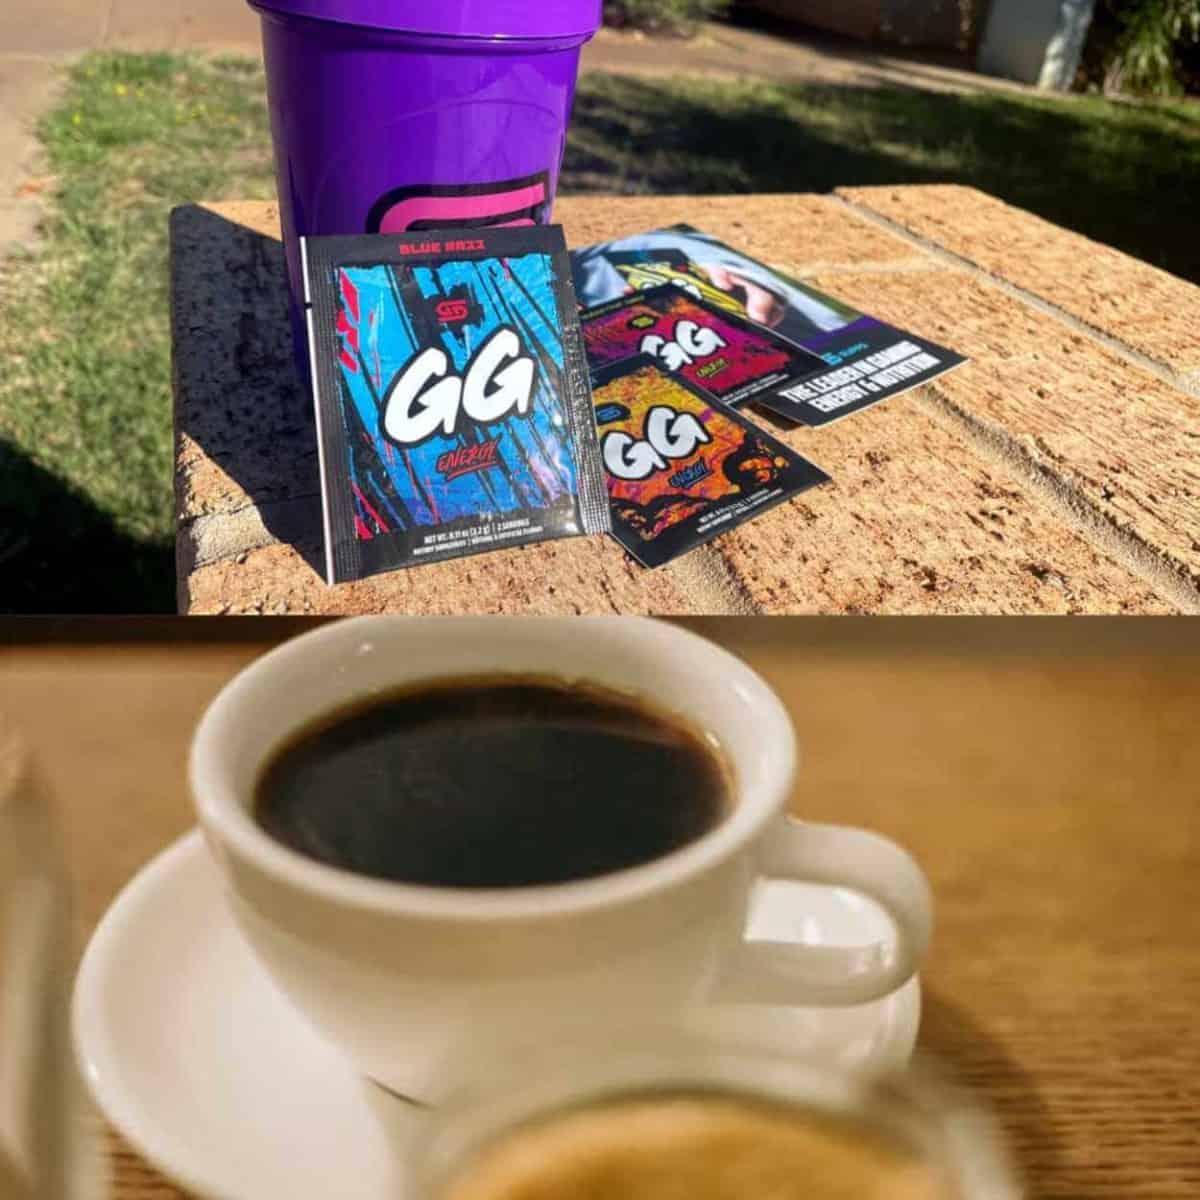 Gg coffee